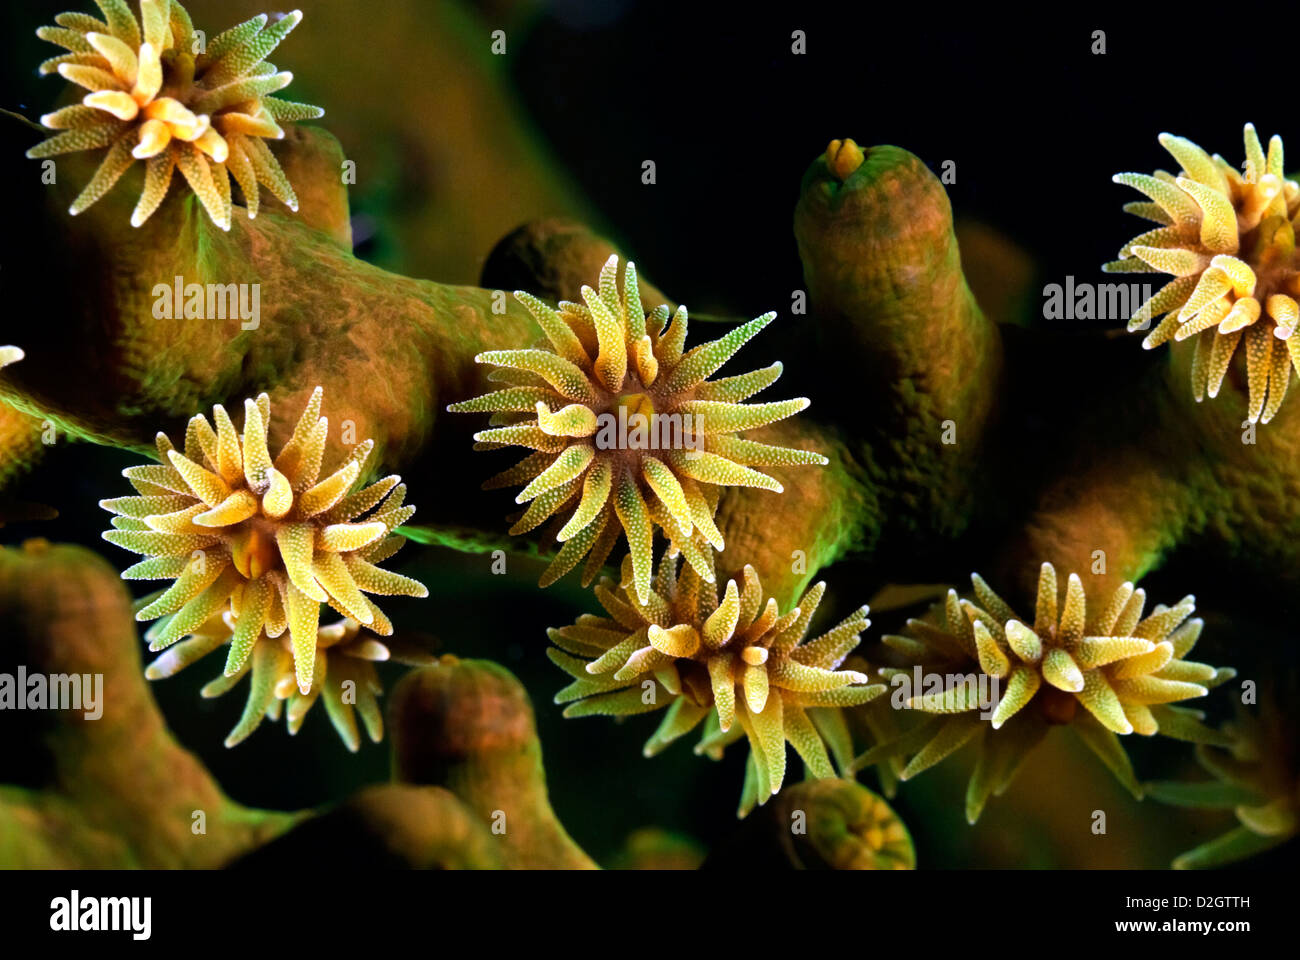 Coral Sun Polyp Tubastraea micrantha, Loloata, Port Moresby, le Centre de la Provence, la Papouasie-Nouvelle-Guinée, Mer de Corail, l'Océan Pacifique Banque D'Images